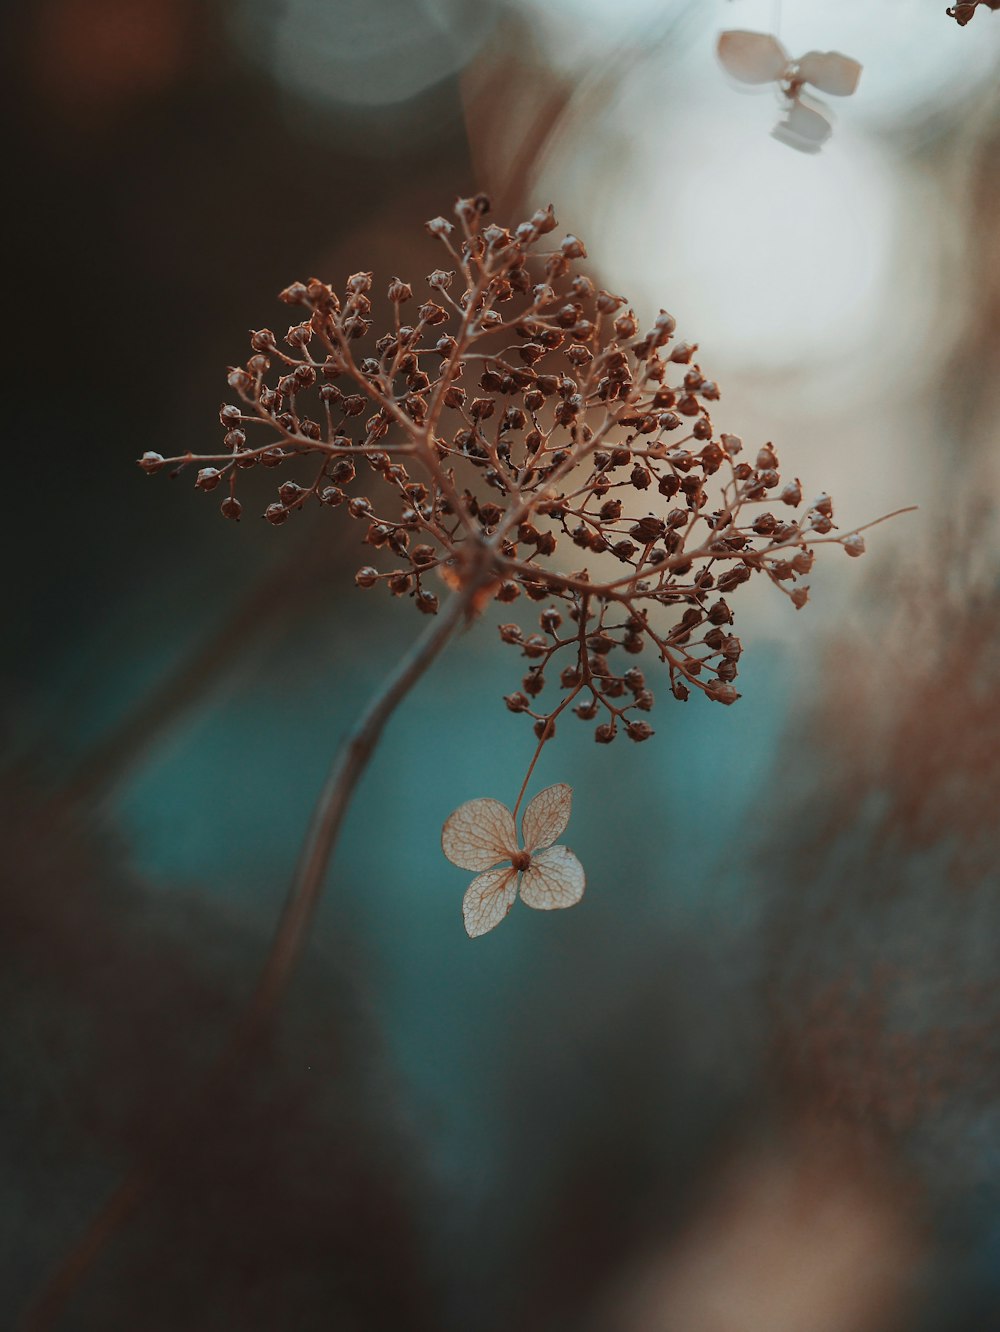 갈색 식물과 흰 꽃의 얕은 초점 사진